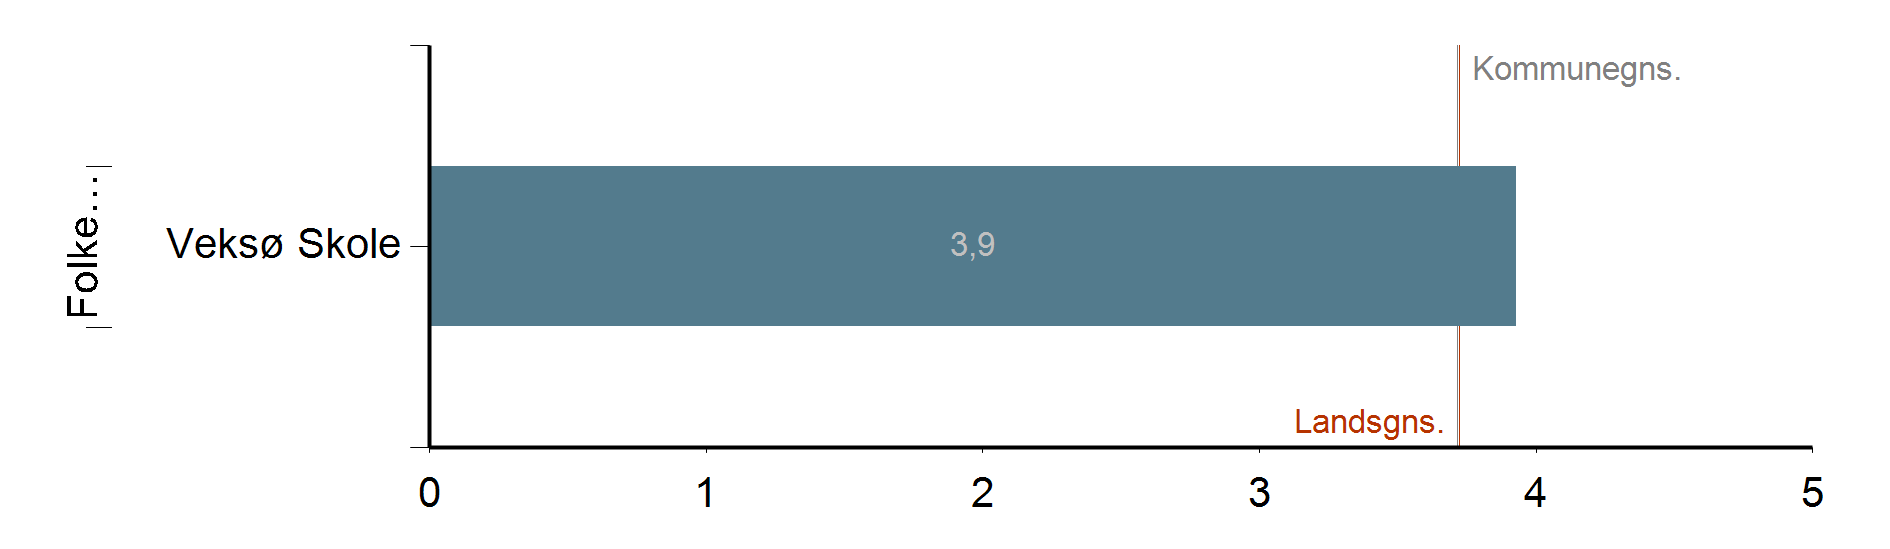 Faglig trivsel Trivsel, faglig trivsel, differentierede indikatorer, gennemsnit pr institution,, 2014/2015 Veksø Skole Note 1: